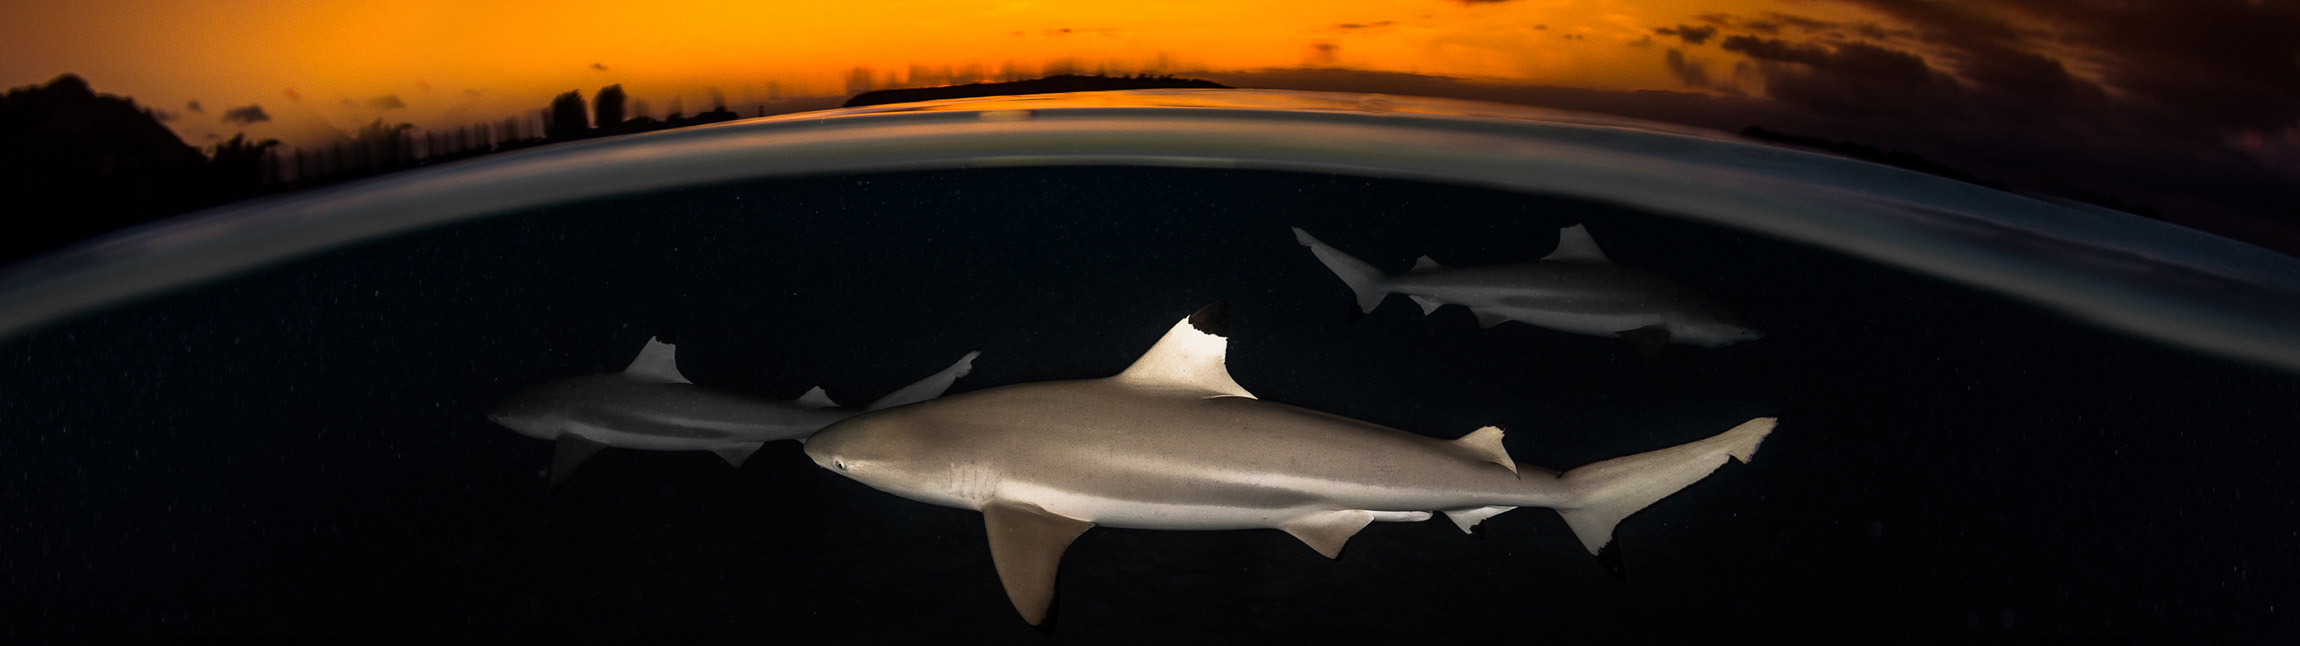 Requins pointe noir au coucher de soleil en Polynéise - TOPDIVE